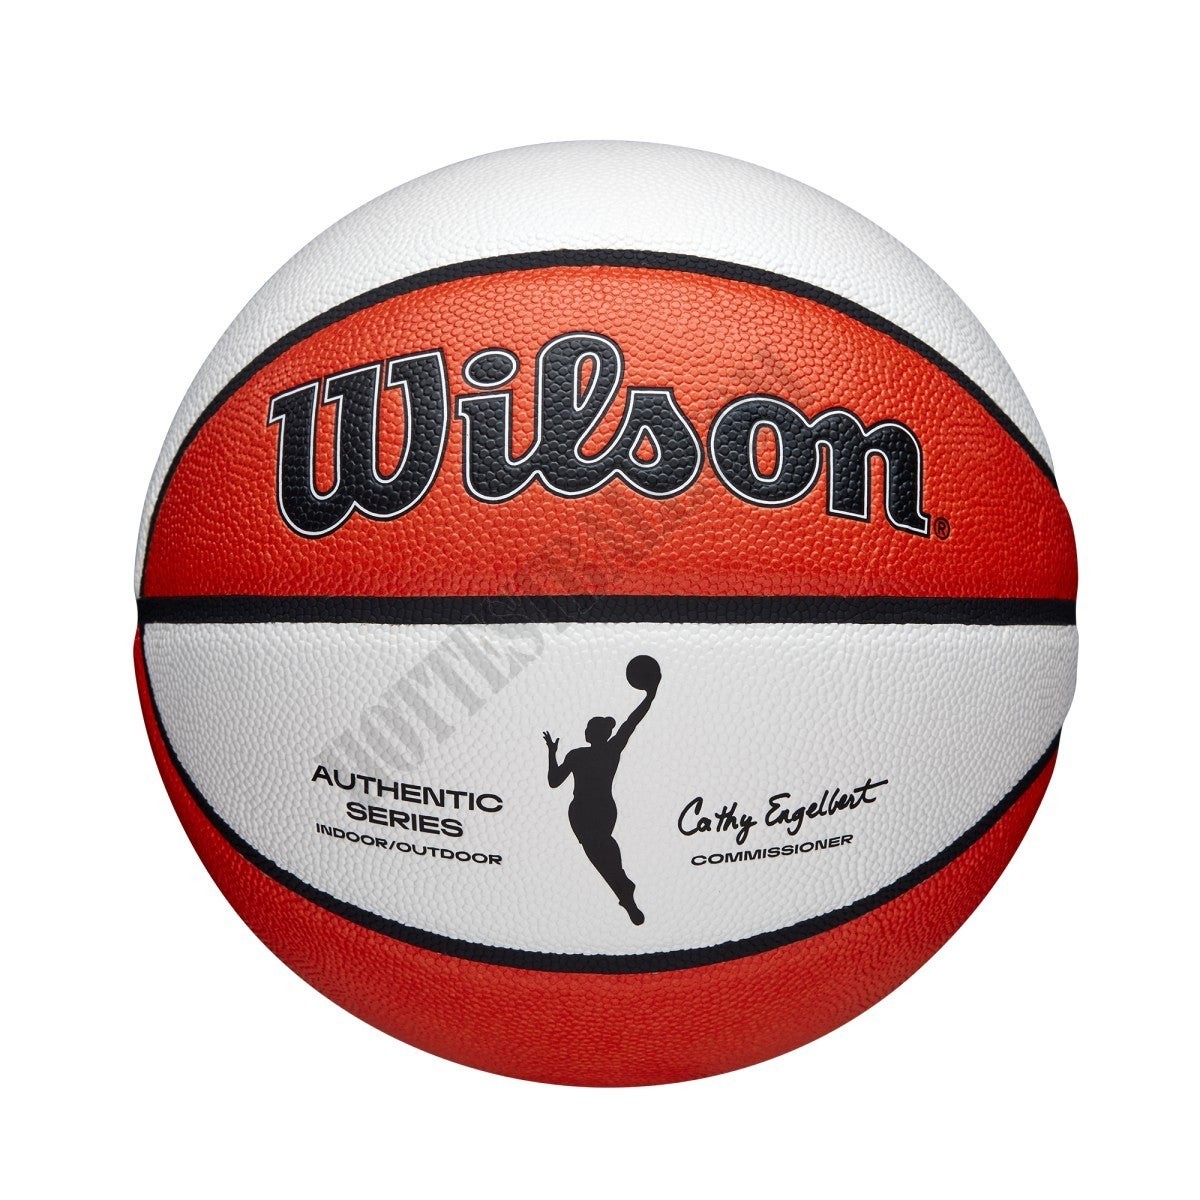 WNBA Authentic Indoor/Outdoor Basketball - Wilson Discount Store - WNBA Authentic Indoor/Outdoor Basketball - Wilson Discount Store